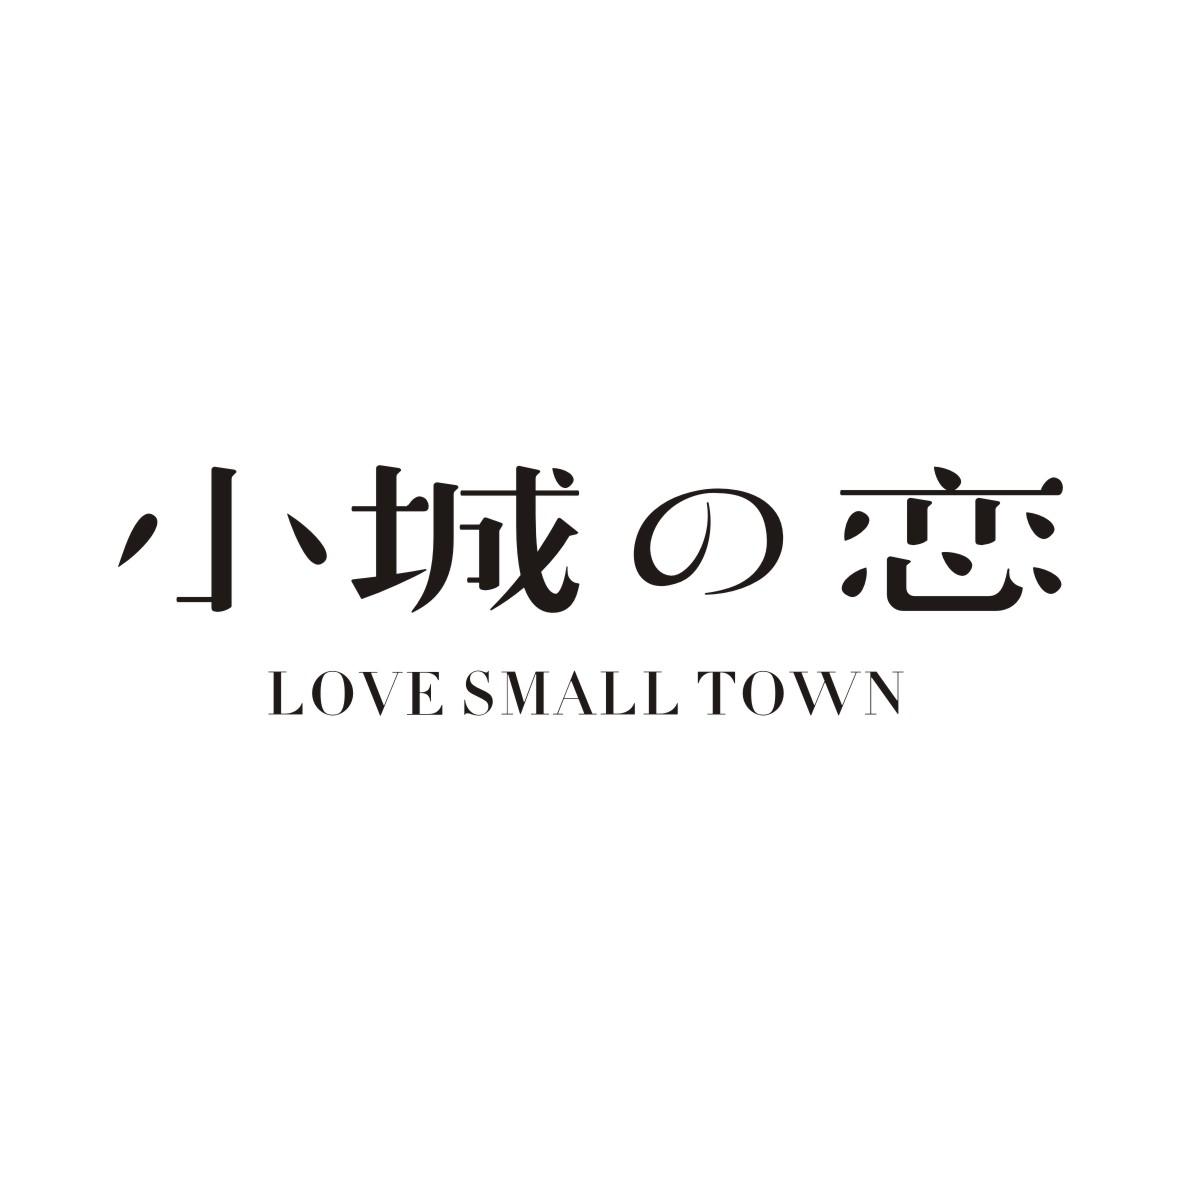 32类-啤酒饮料小城恋 LOVE SMALL TOWN商标转让